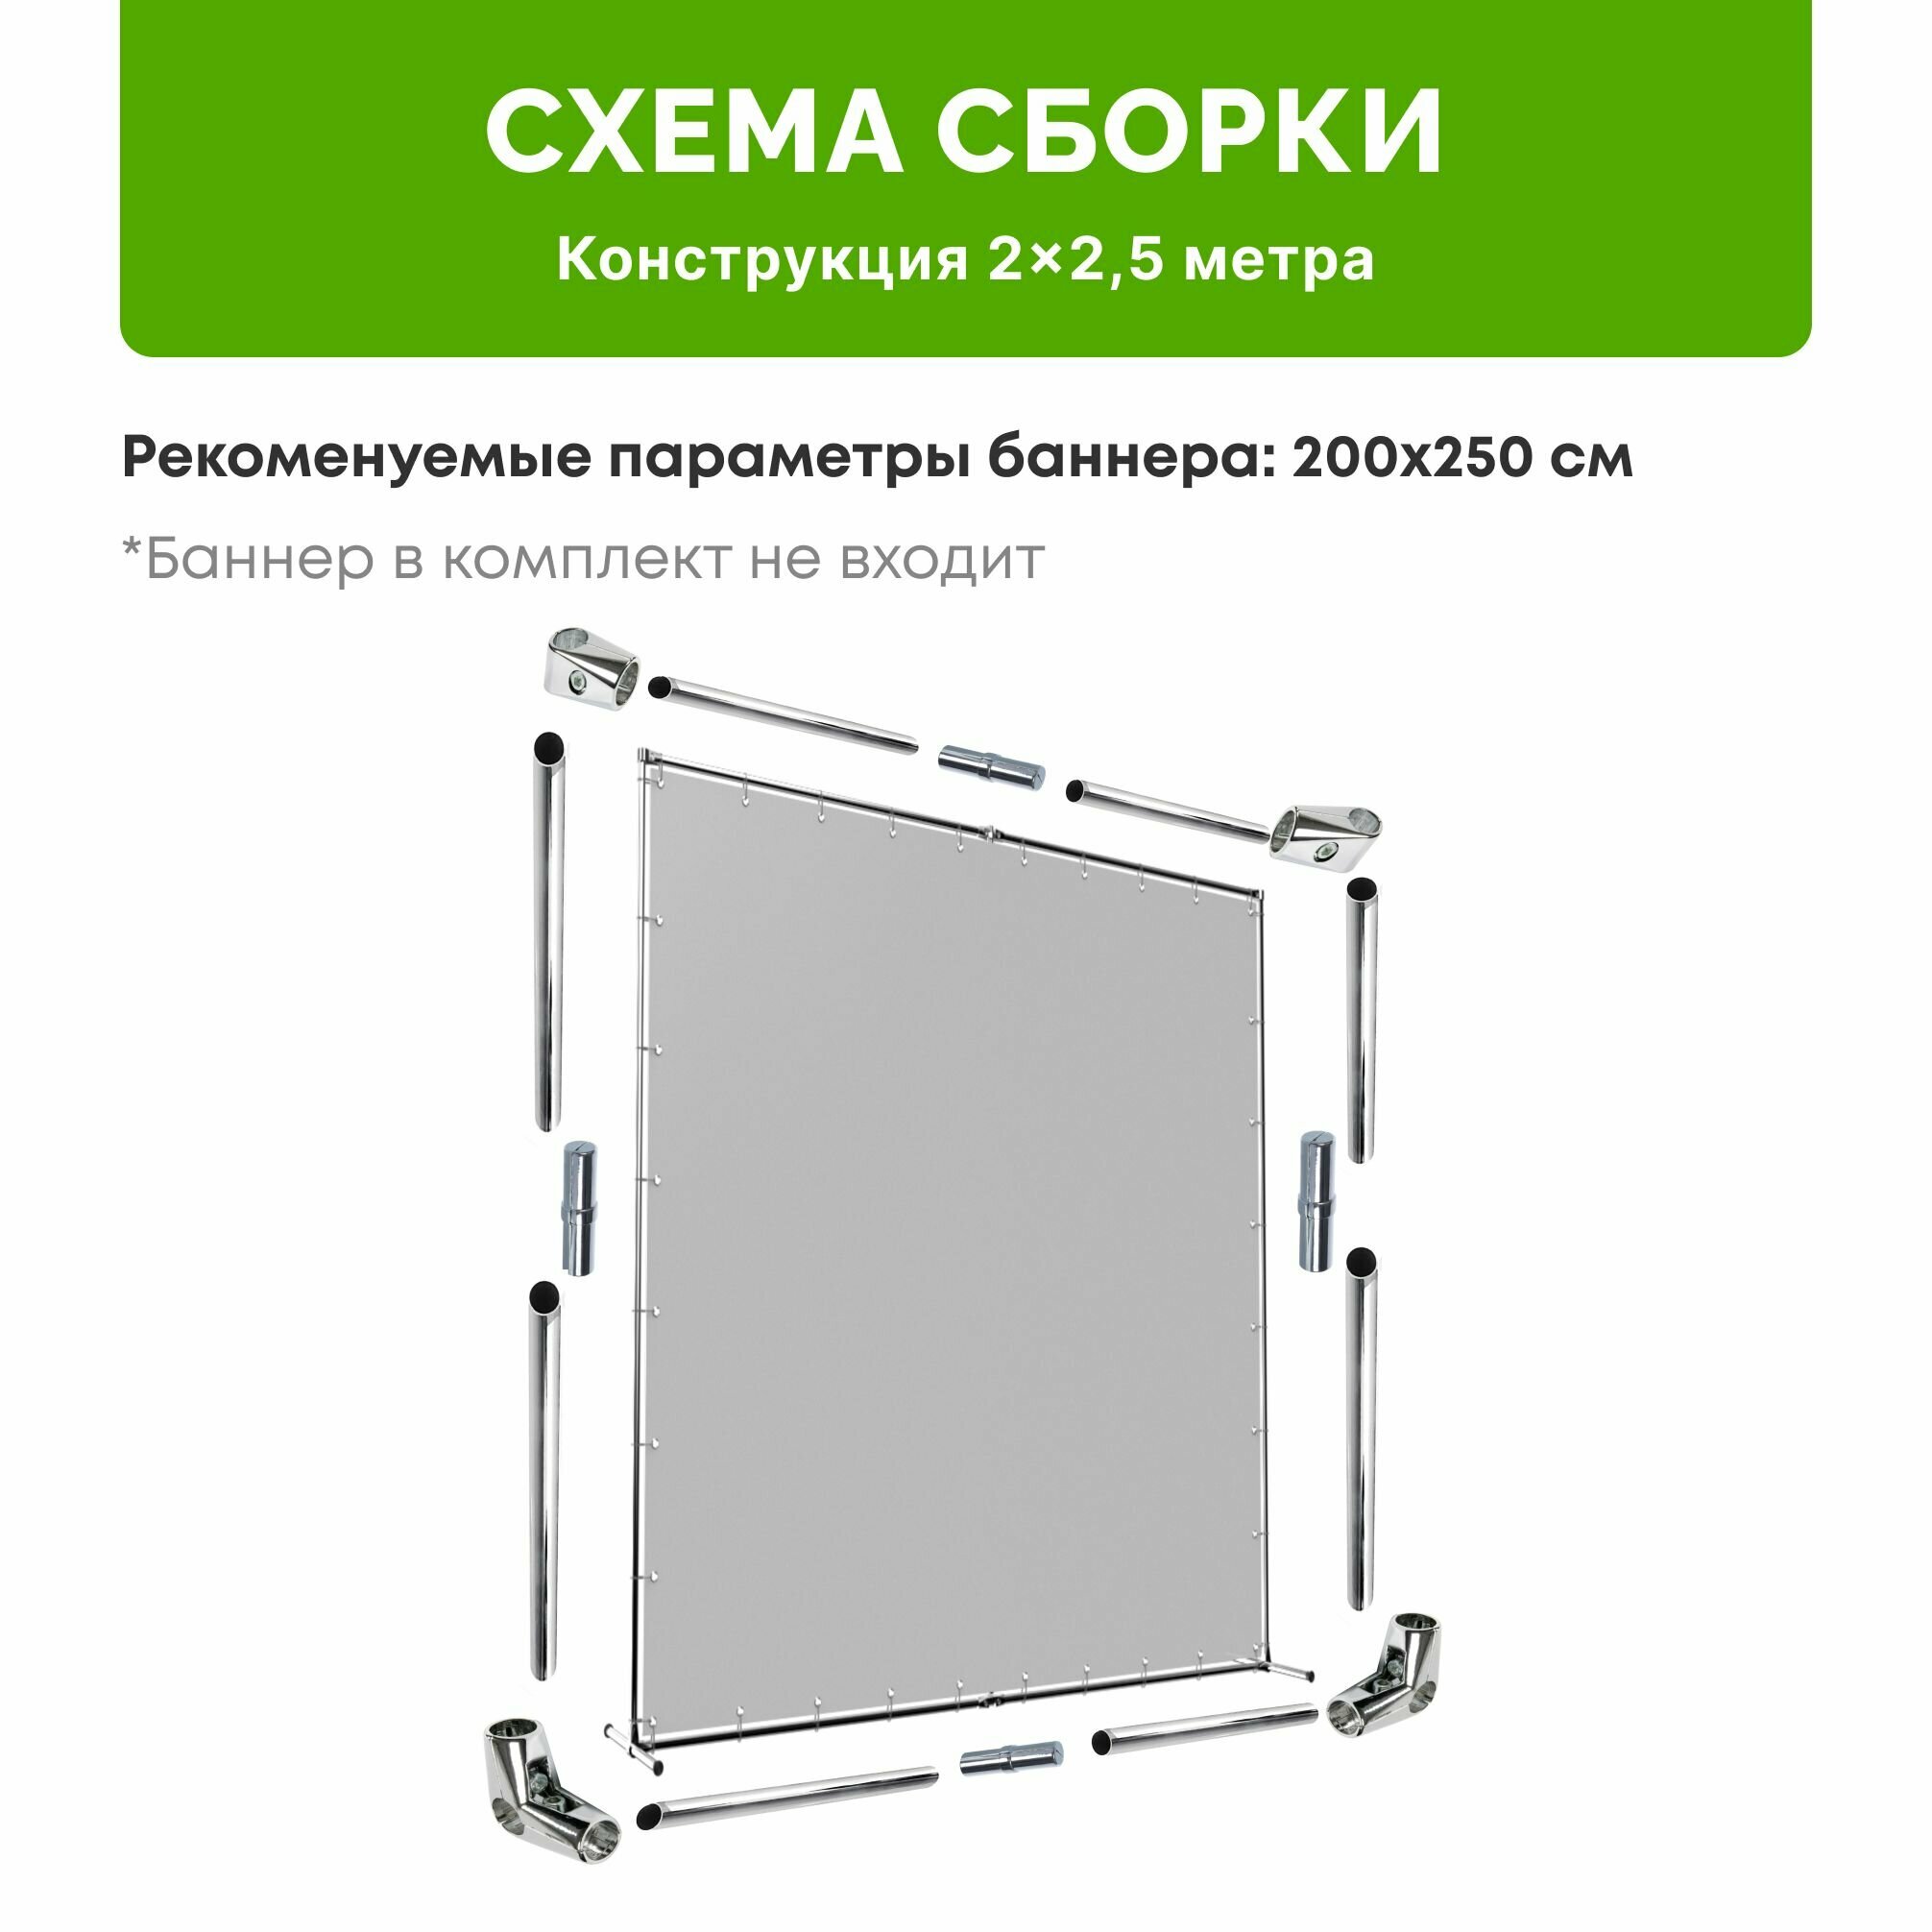 Каркас для фотозоны 2х2,5 м вертикальный / Прес вол конструкция 200х250 см / Press Wall